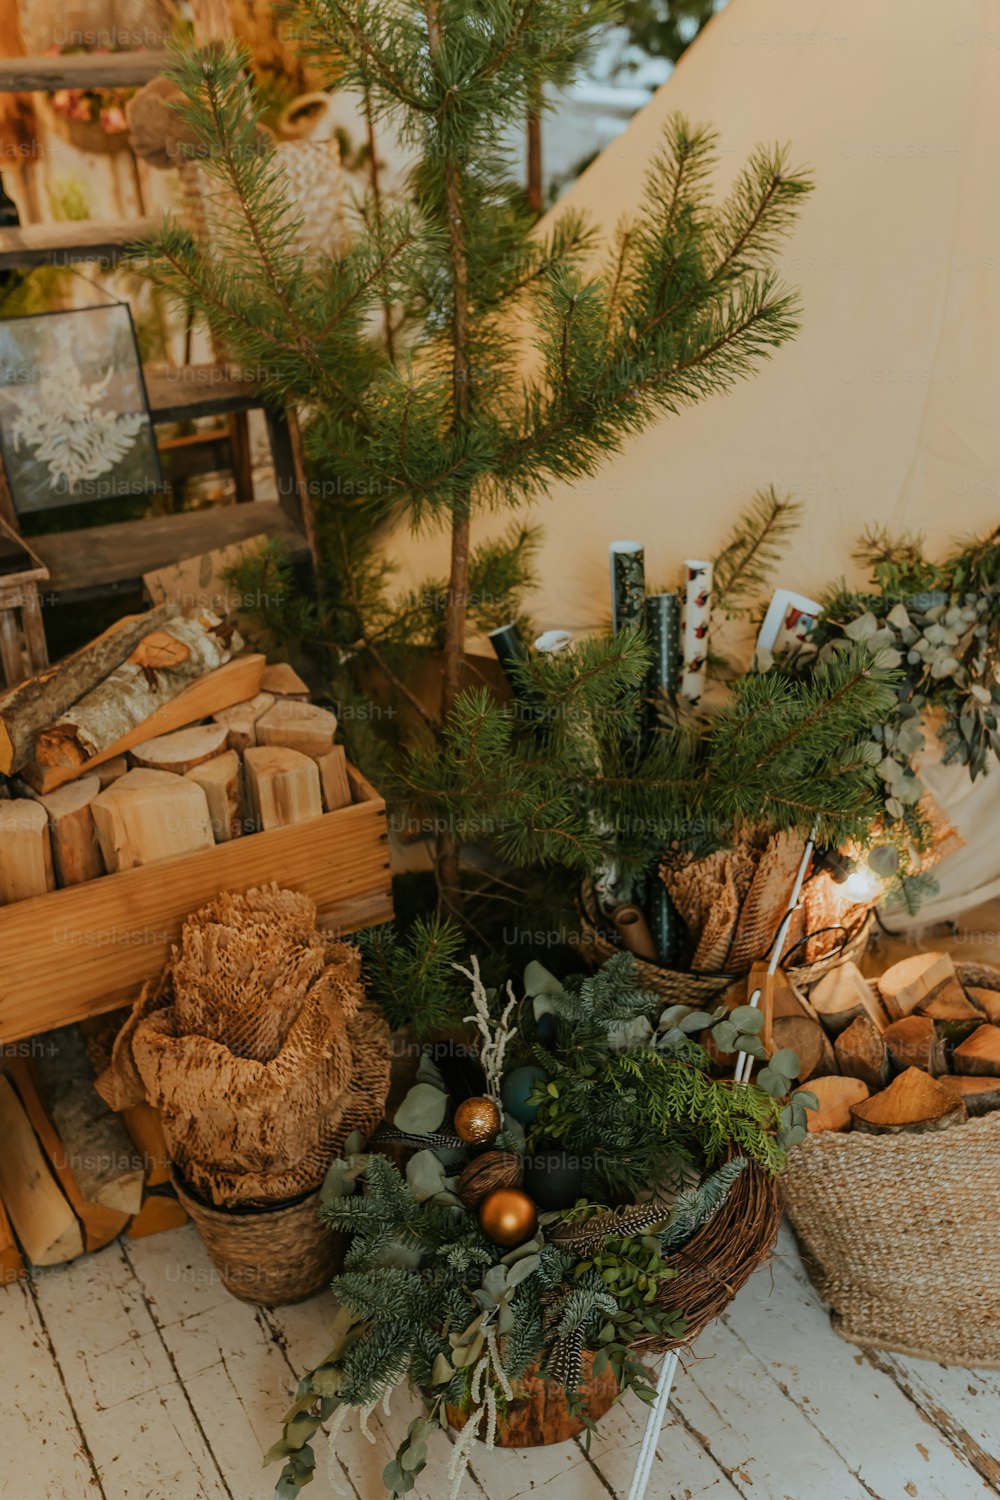 통나무 바구니와 크리스마스 트��리가 있는 테이블